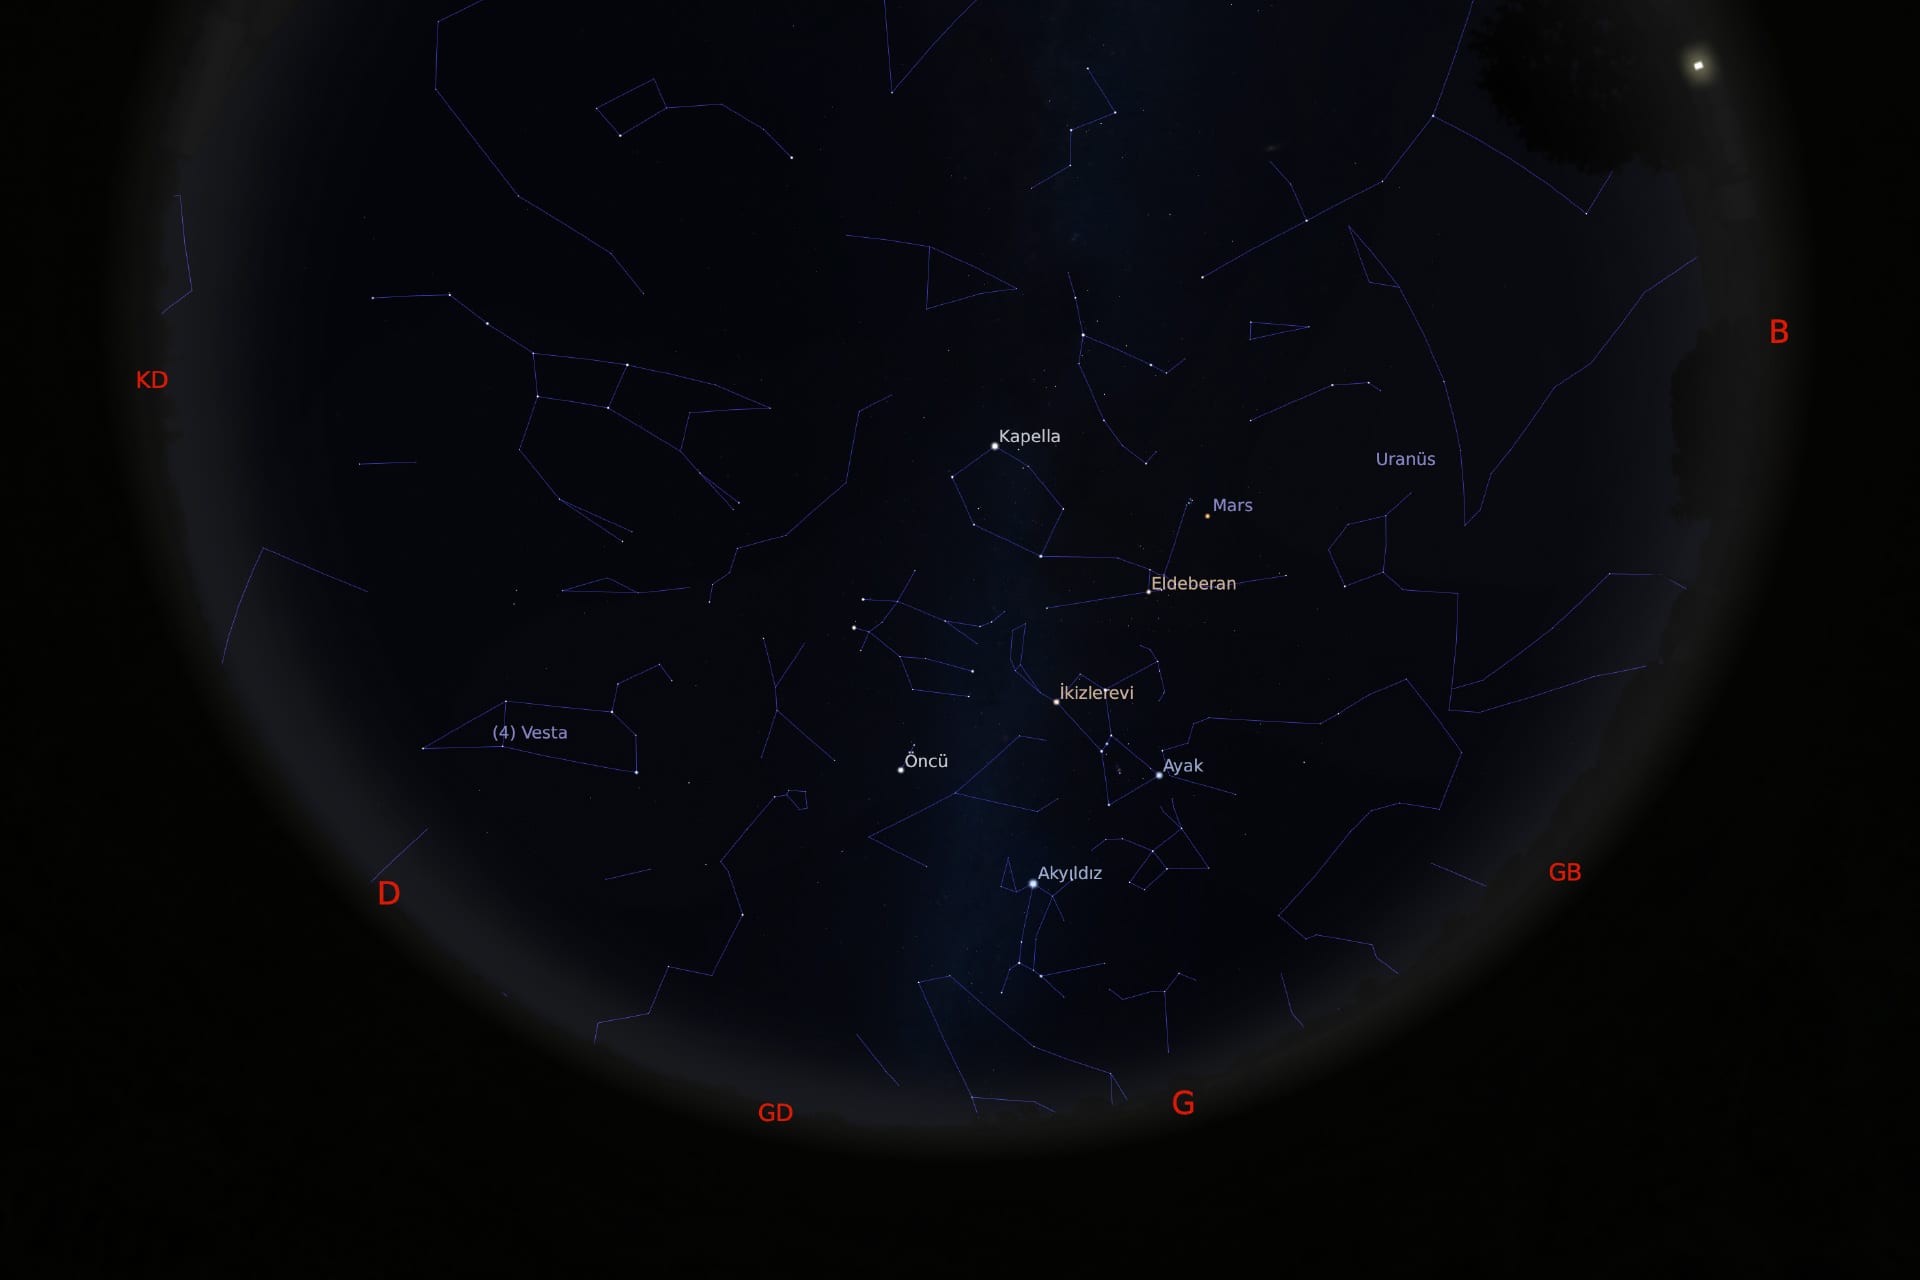 1 Mart 2021 - saat 20:30'daki gökyüzü görüntüsü